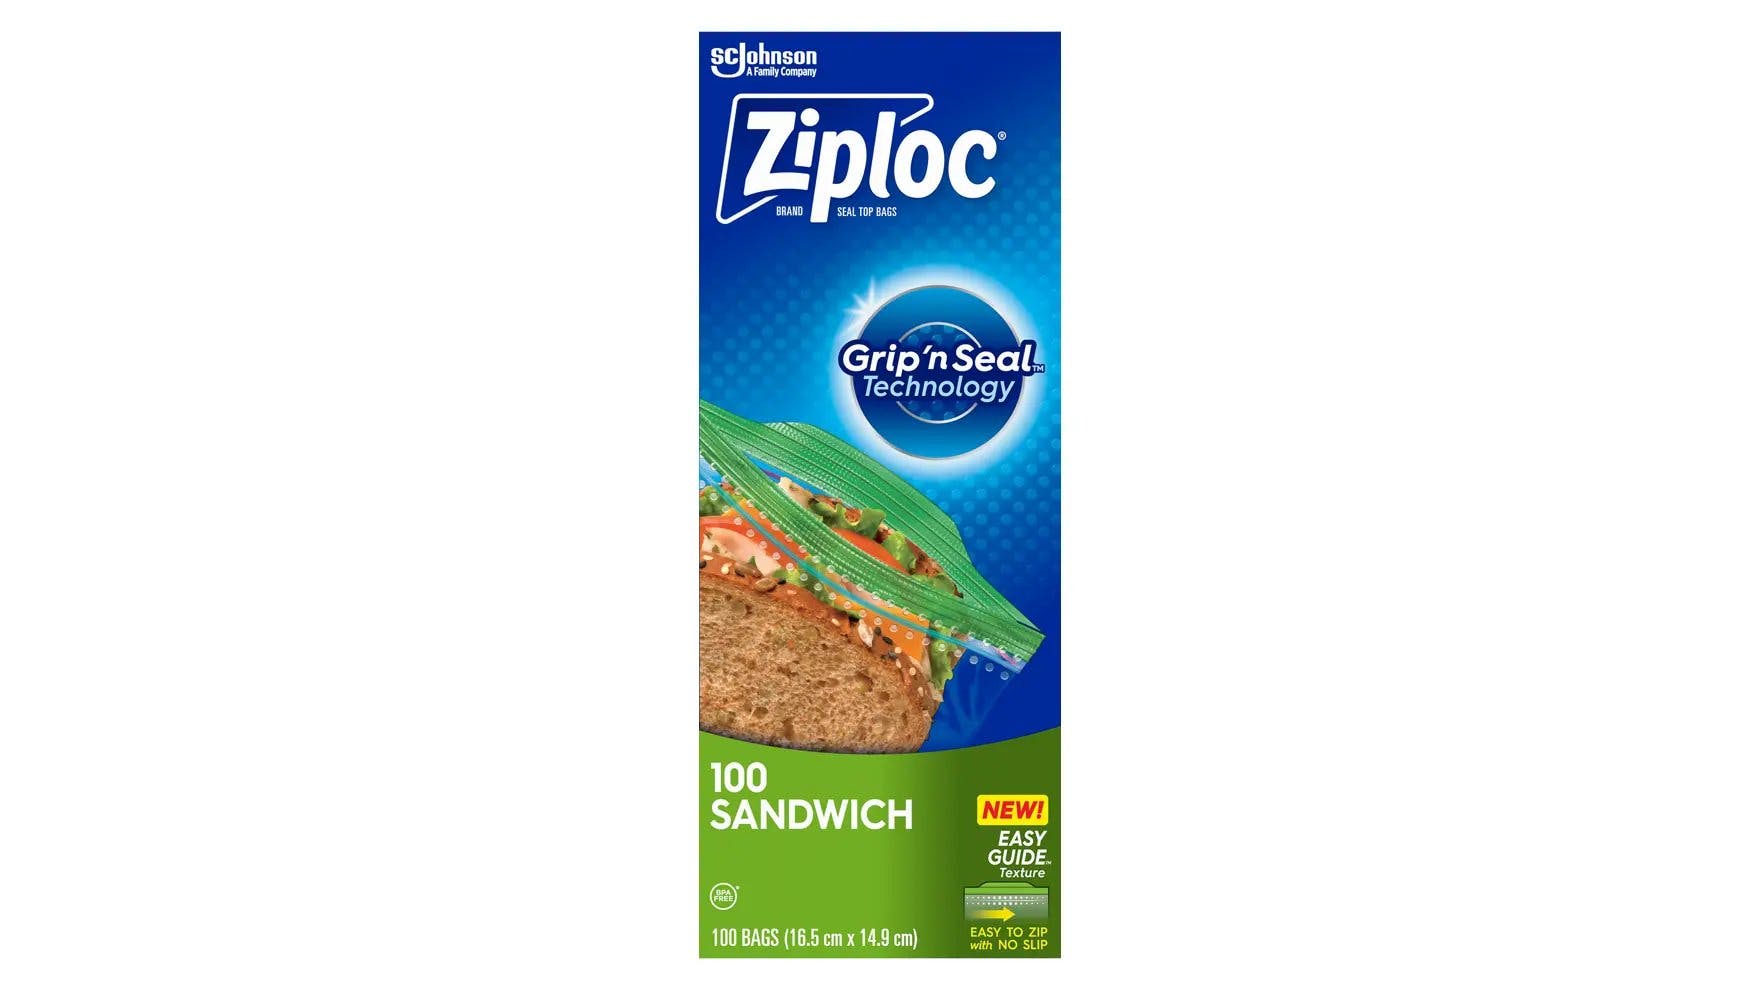 Top of Ziploc sandwich bag box.